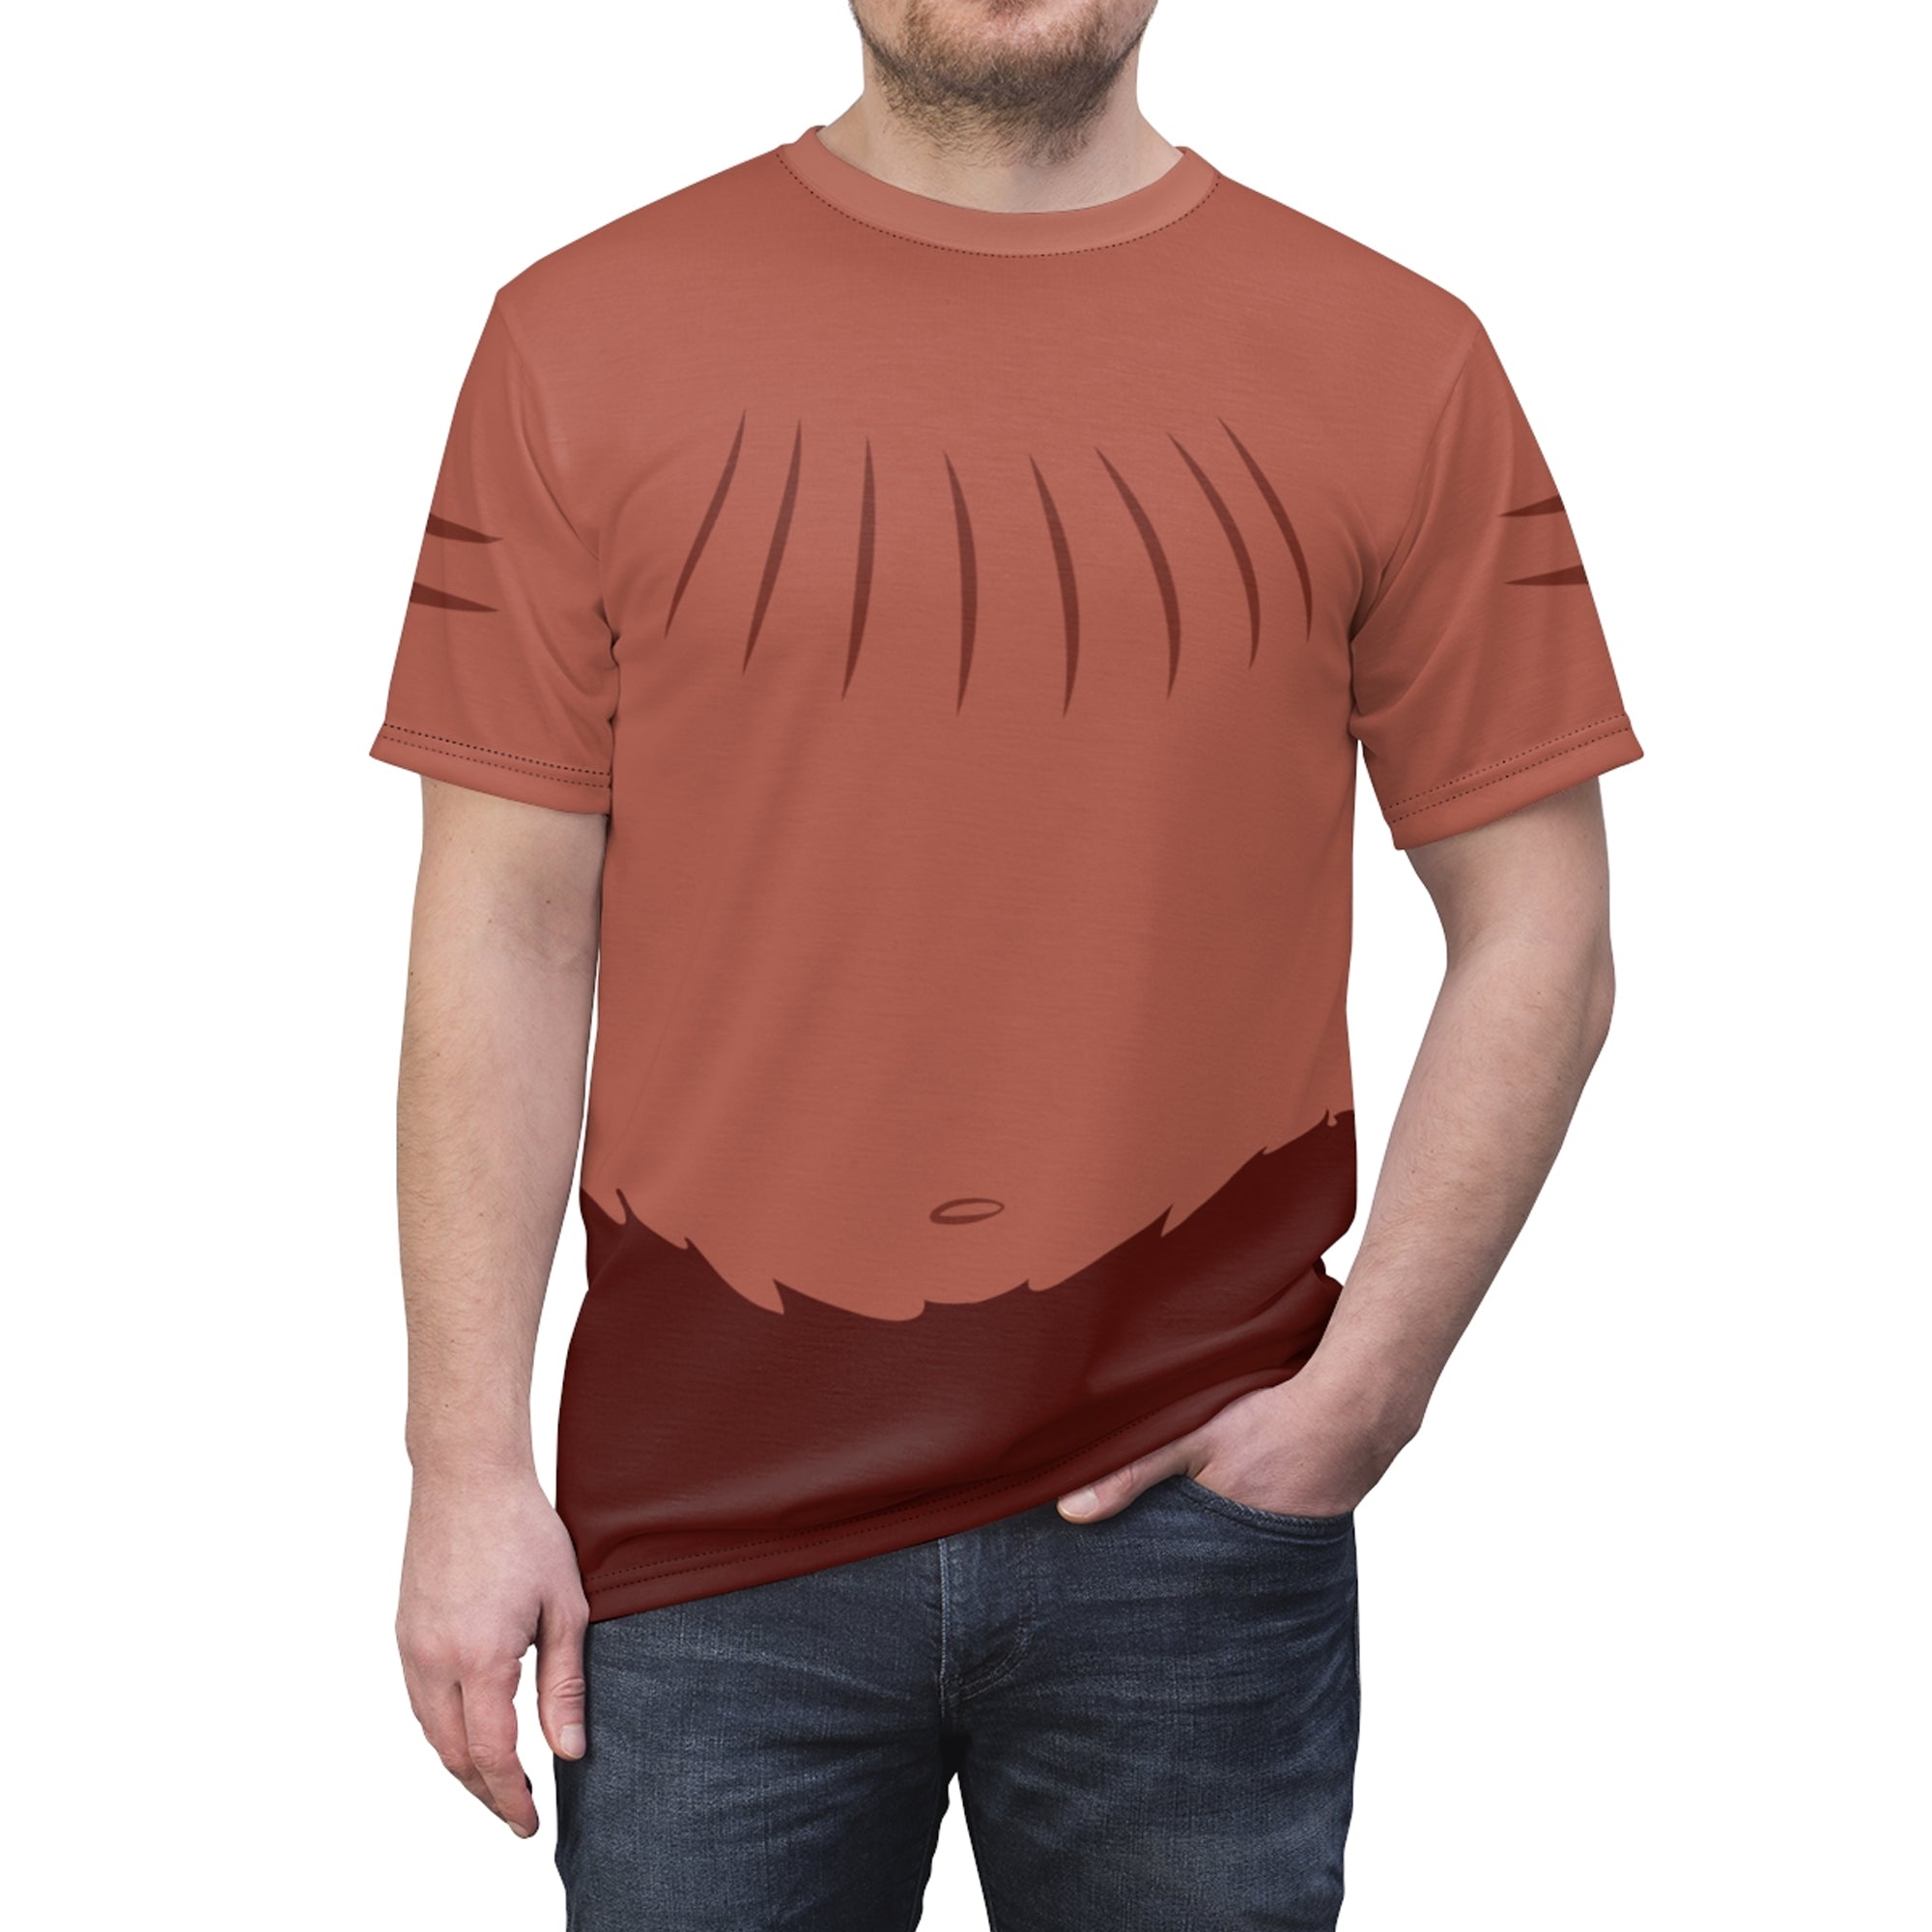 Phil Hercules Costume T-Shirt For Men